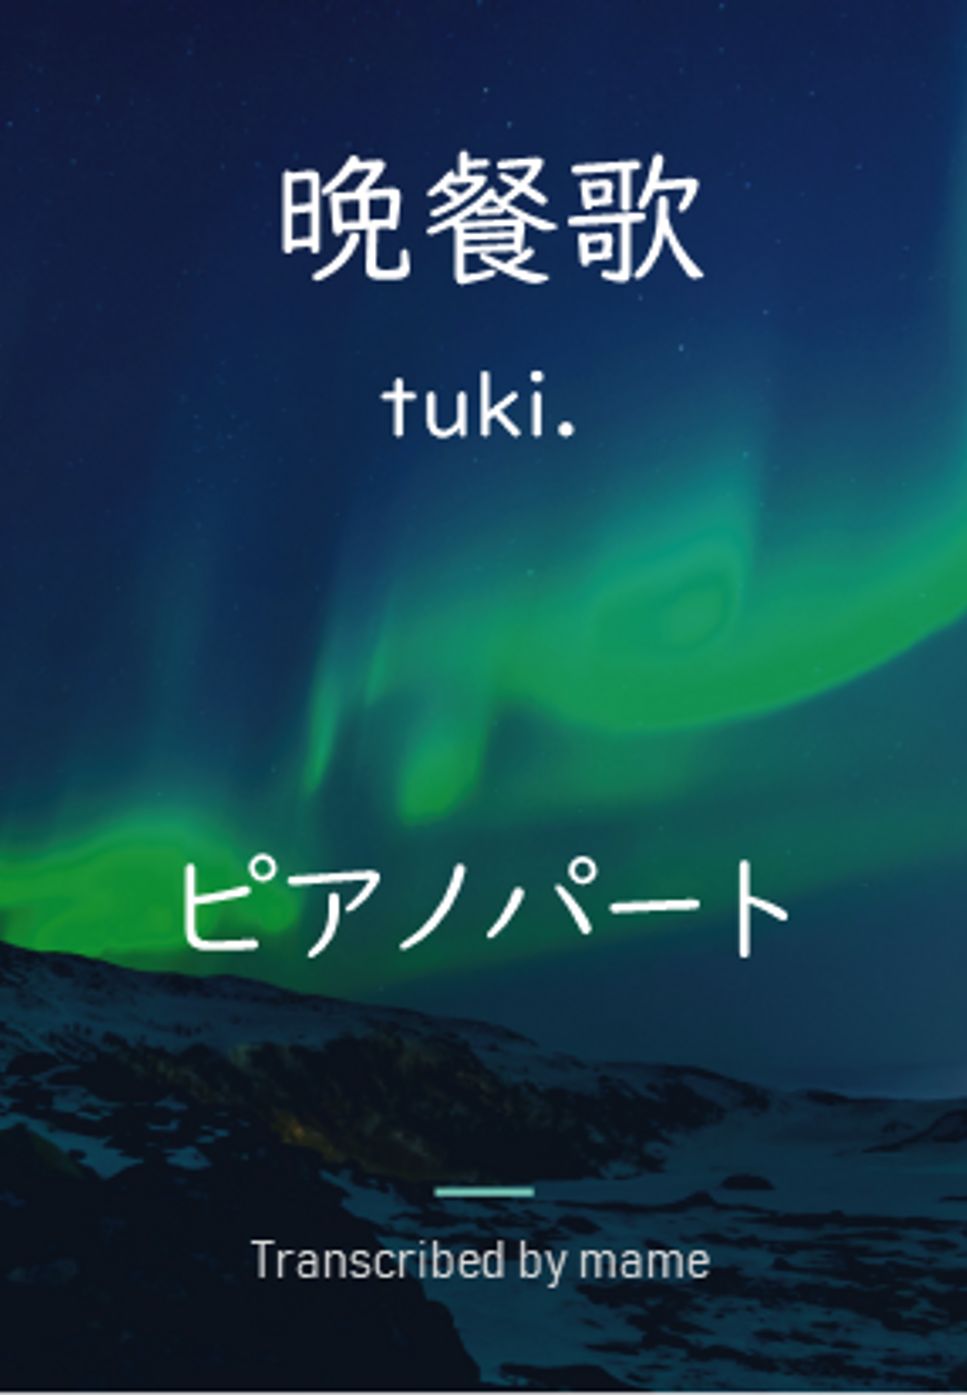 tuki. - 晩餐歌 (piano part) by mame